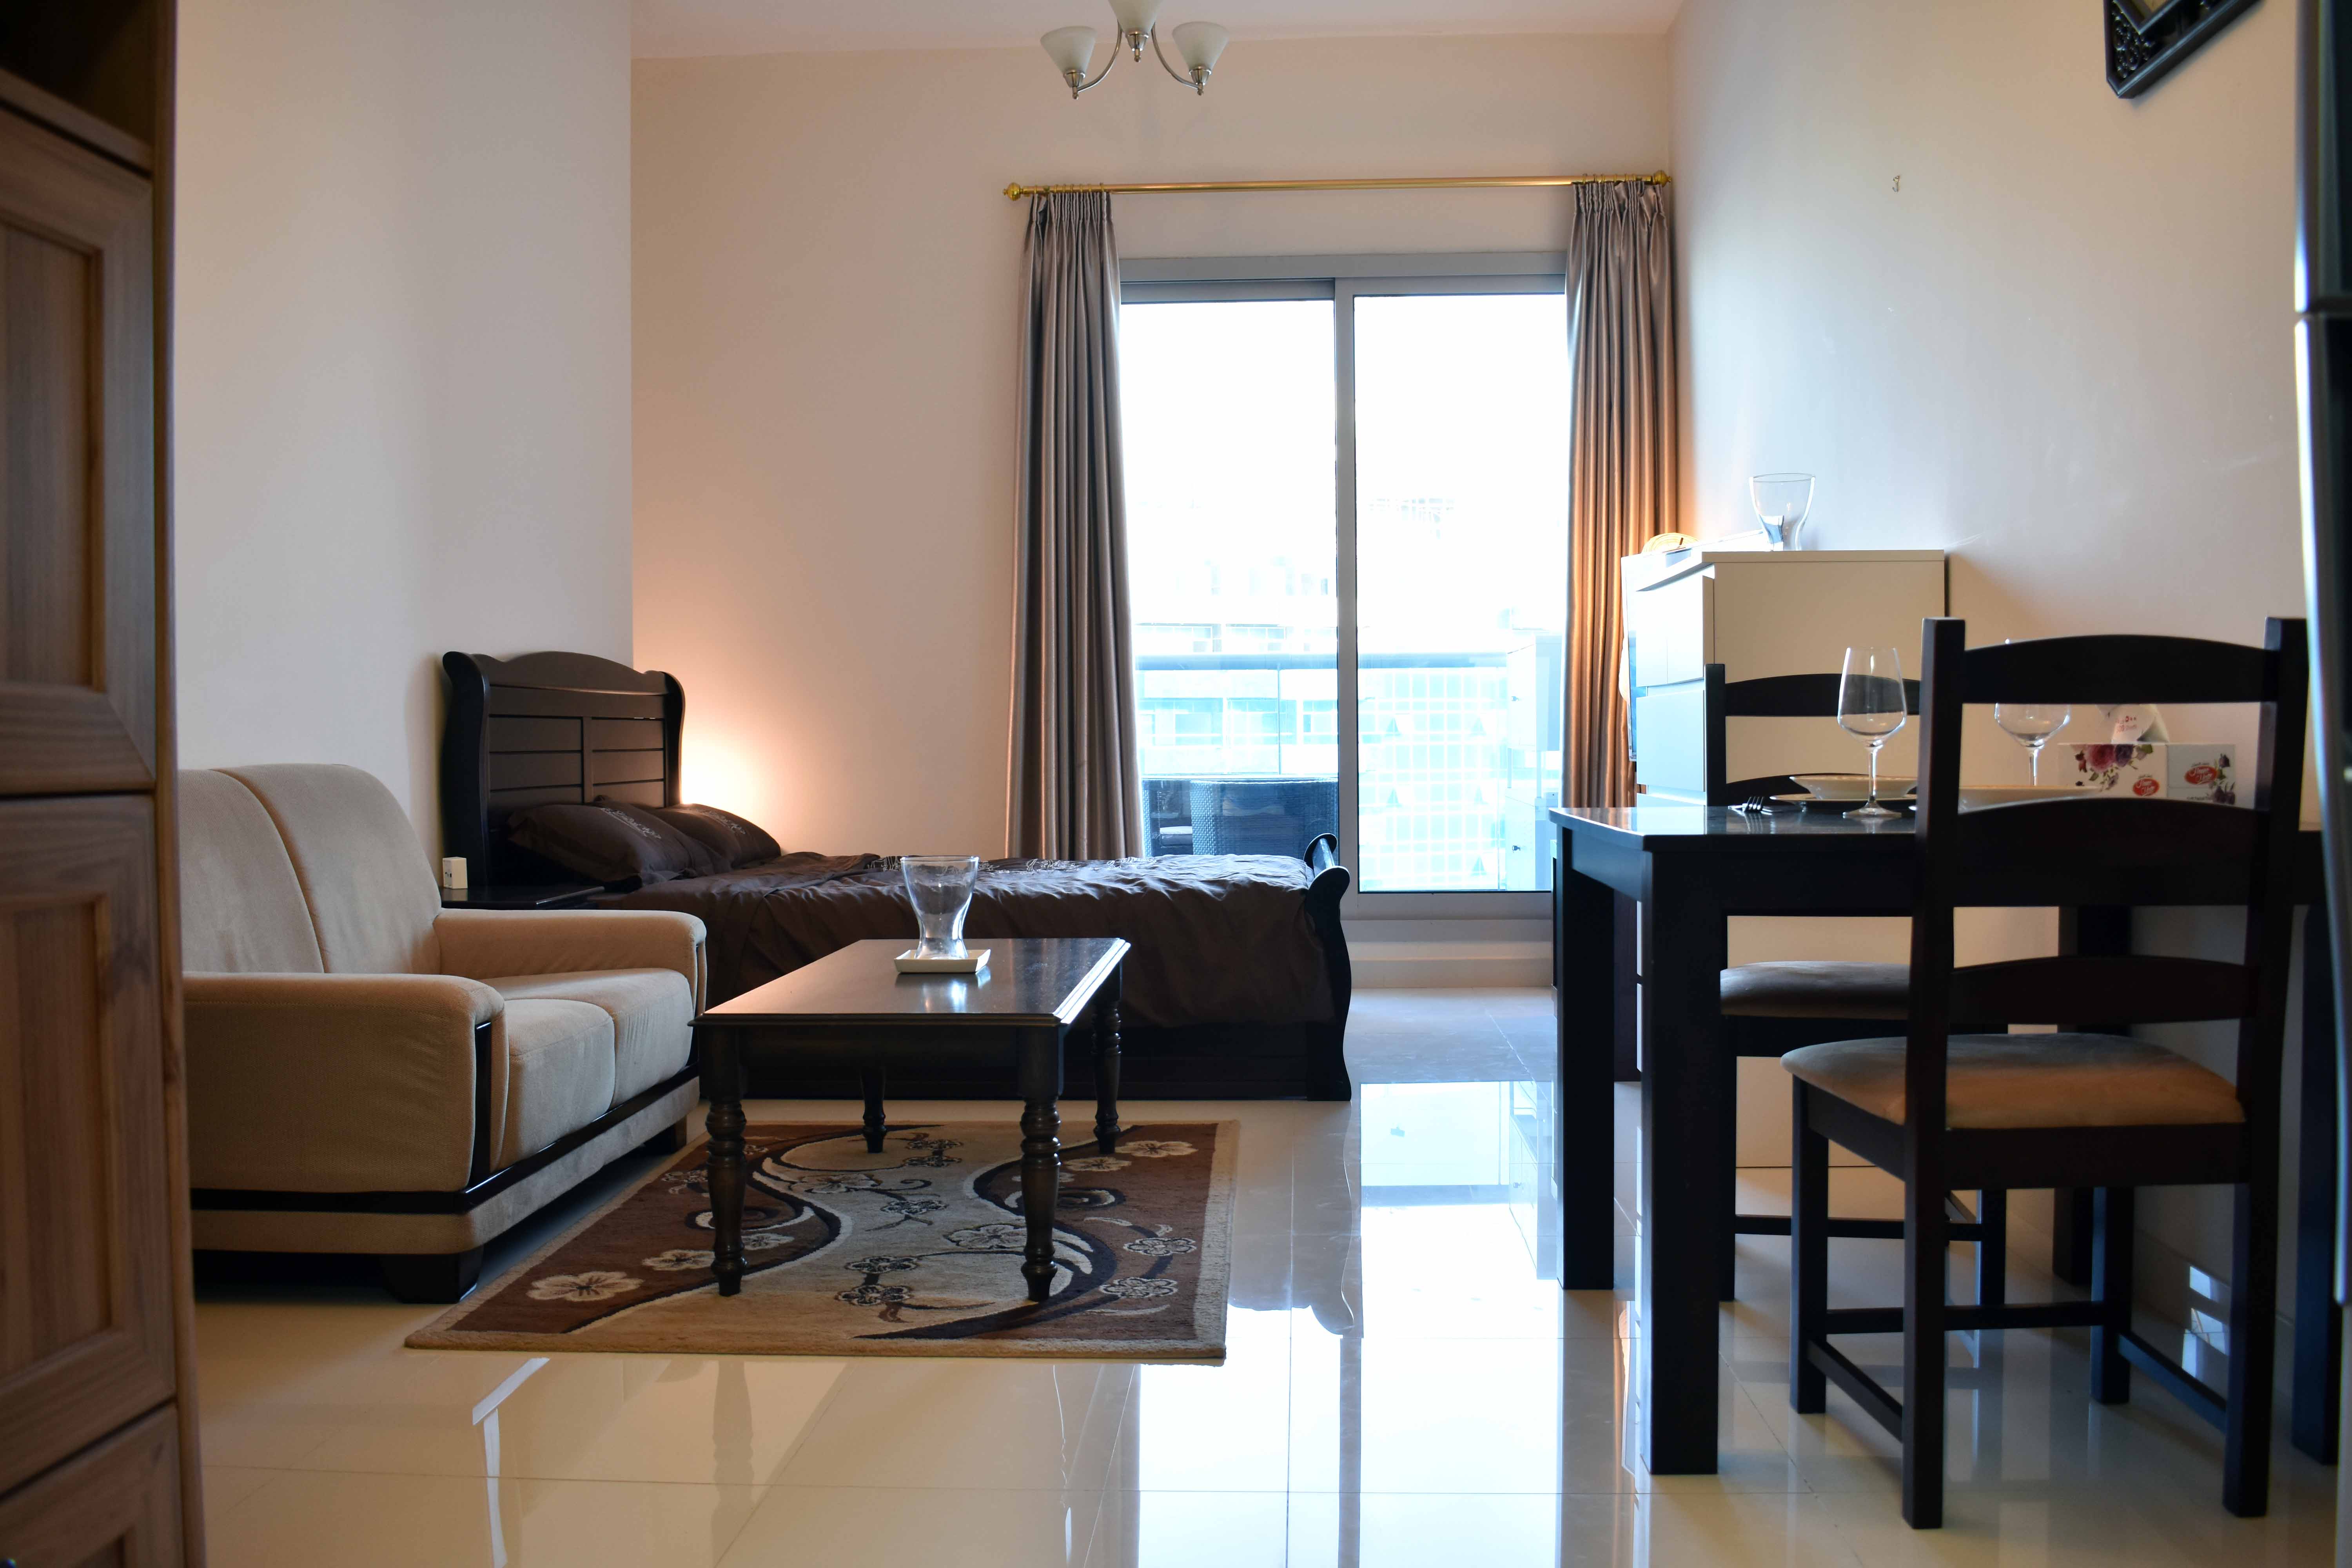 Luxury Studio Apartment in the beautiful Dubai - Flats for Rent in Dubai,  Dubai, United Arab Emirates